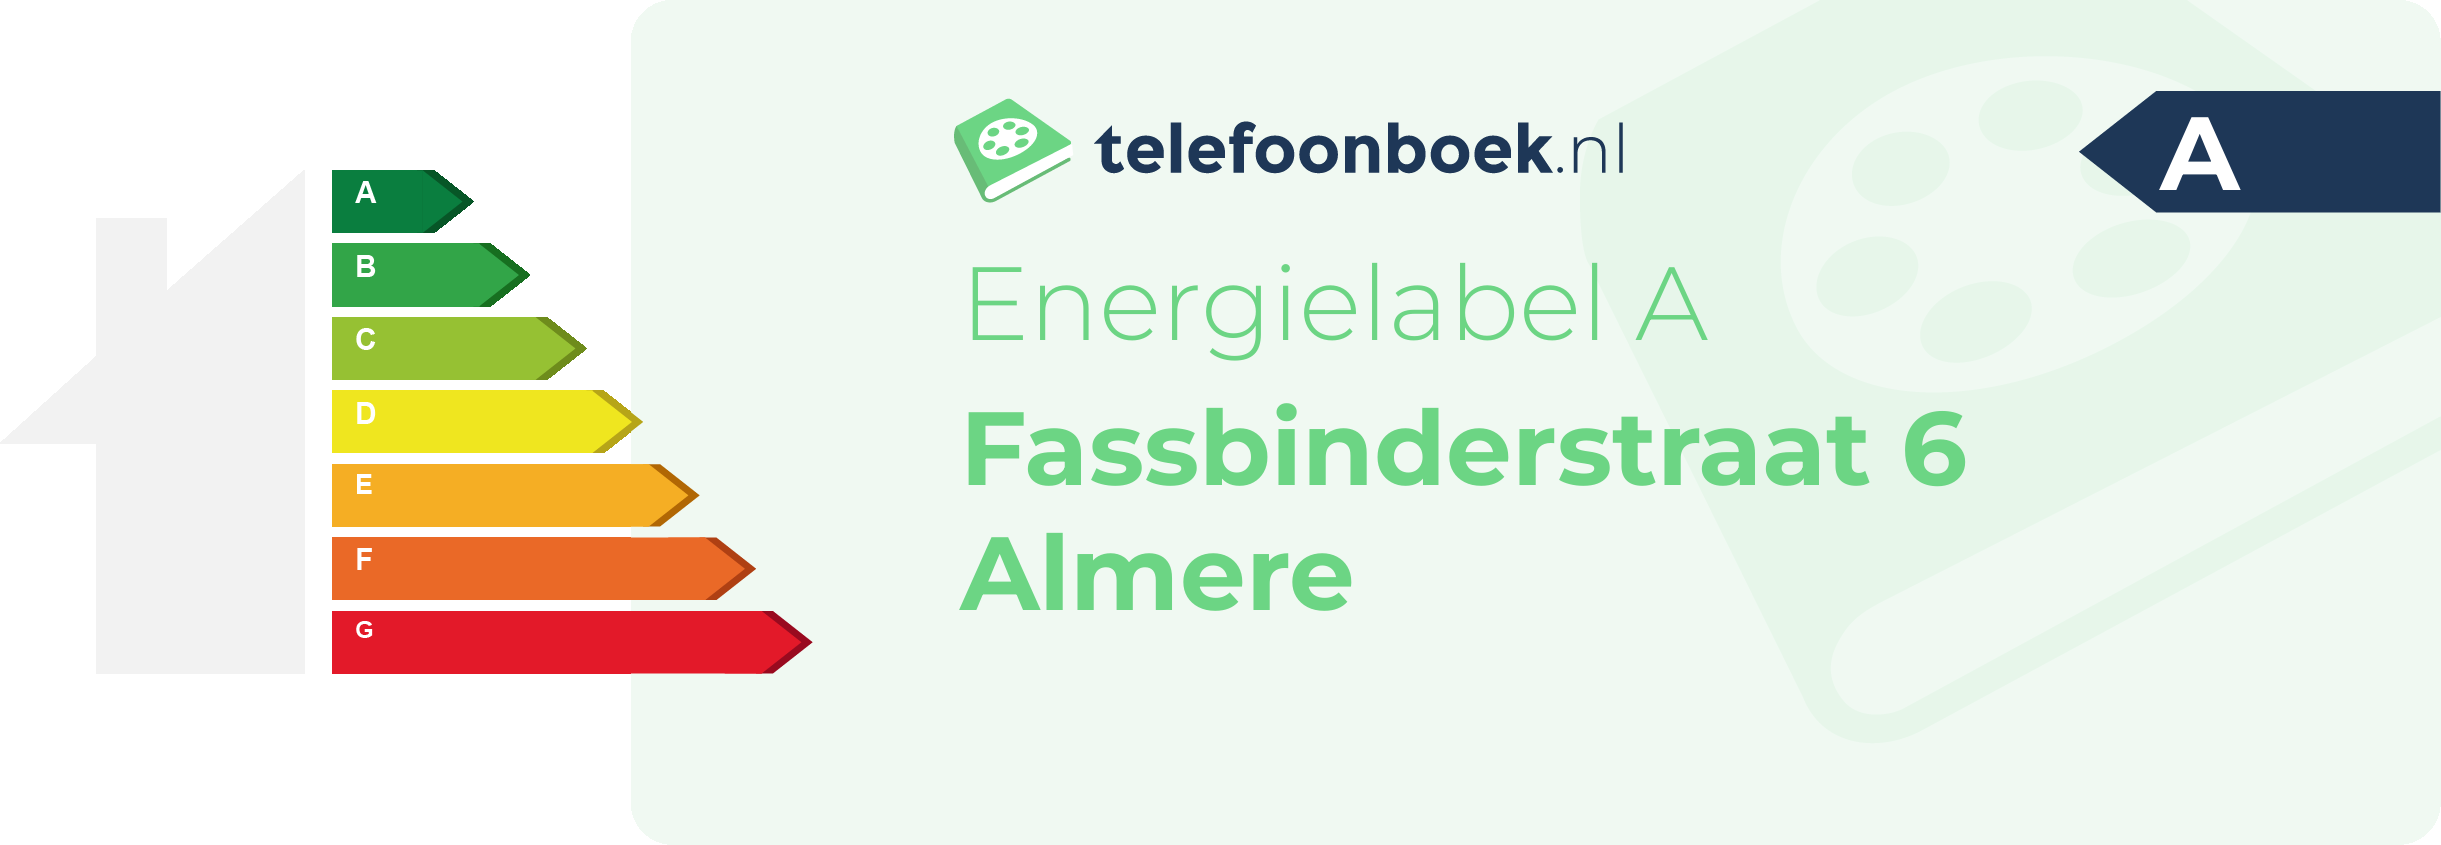 Energielabel Fassbinderstraat 6 Almere